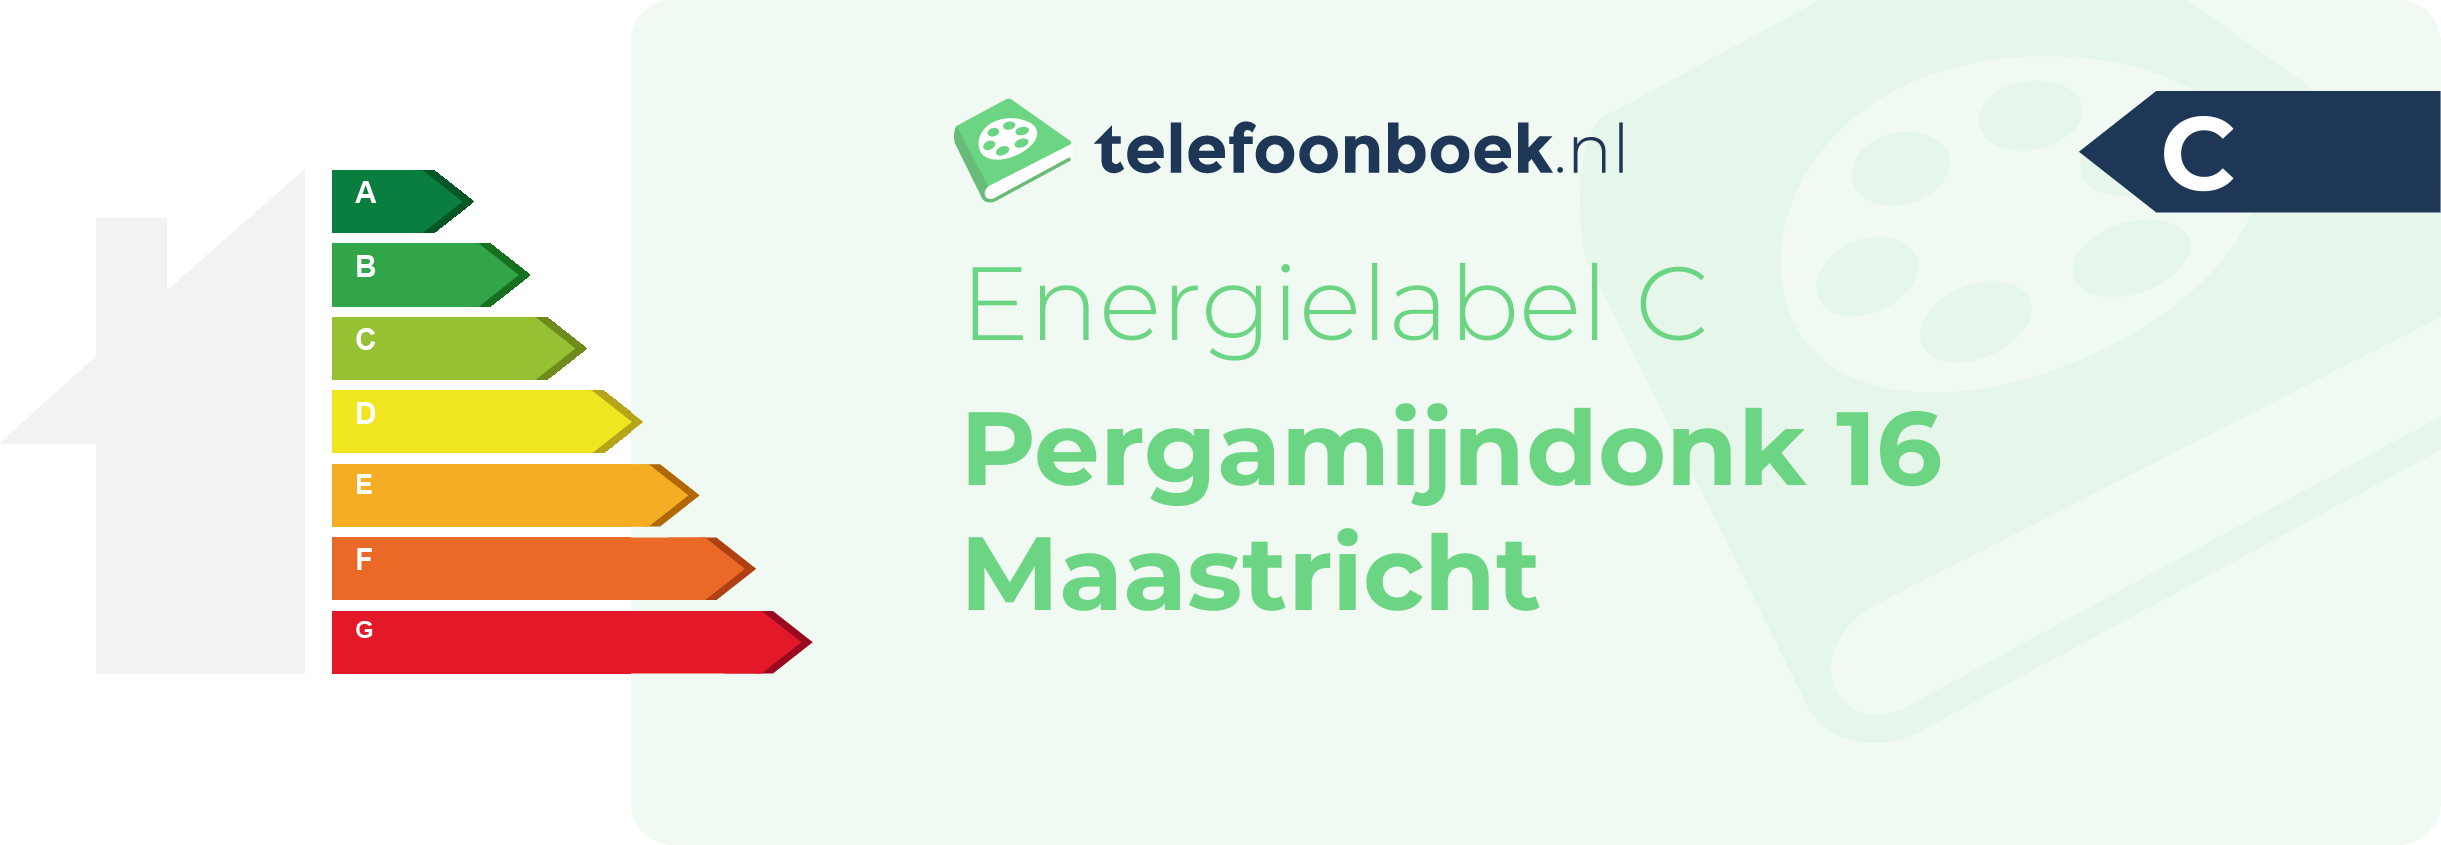 Energielabel Pergamijndonk 16 Maastricht